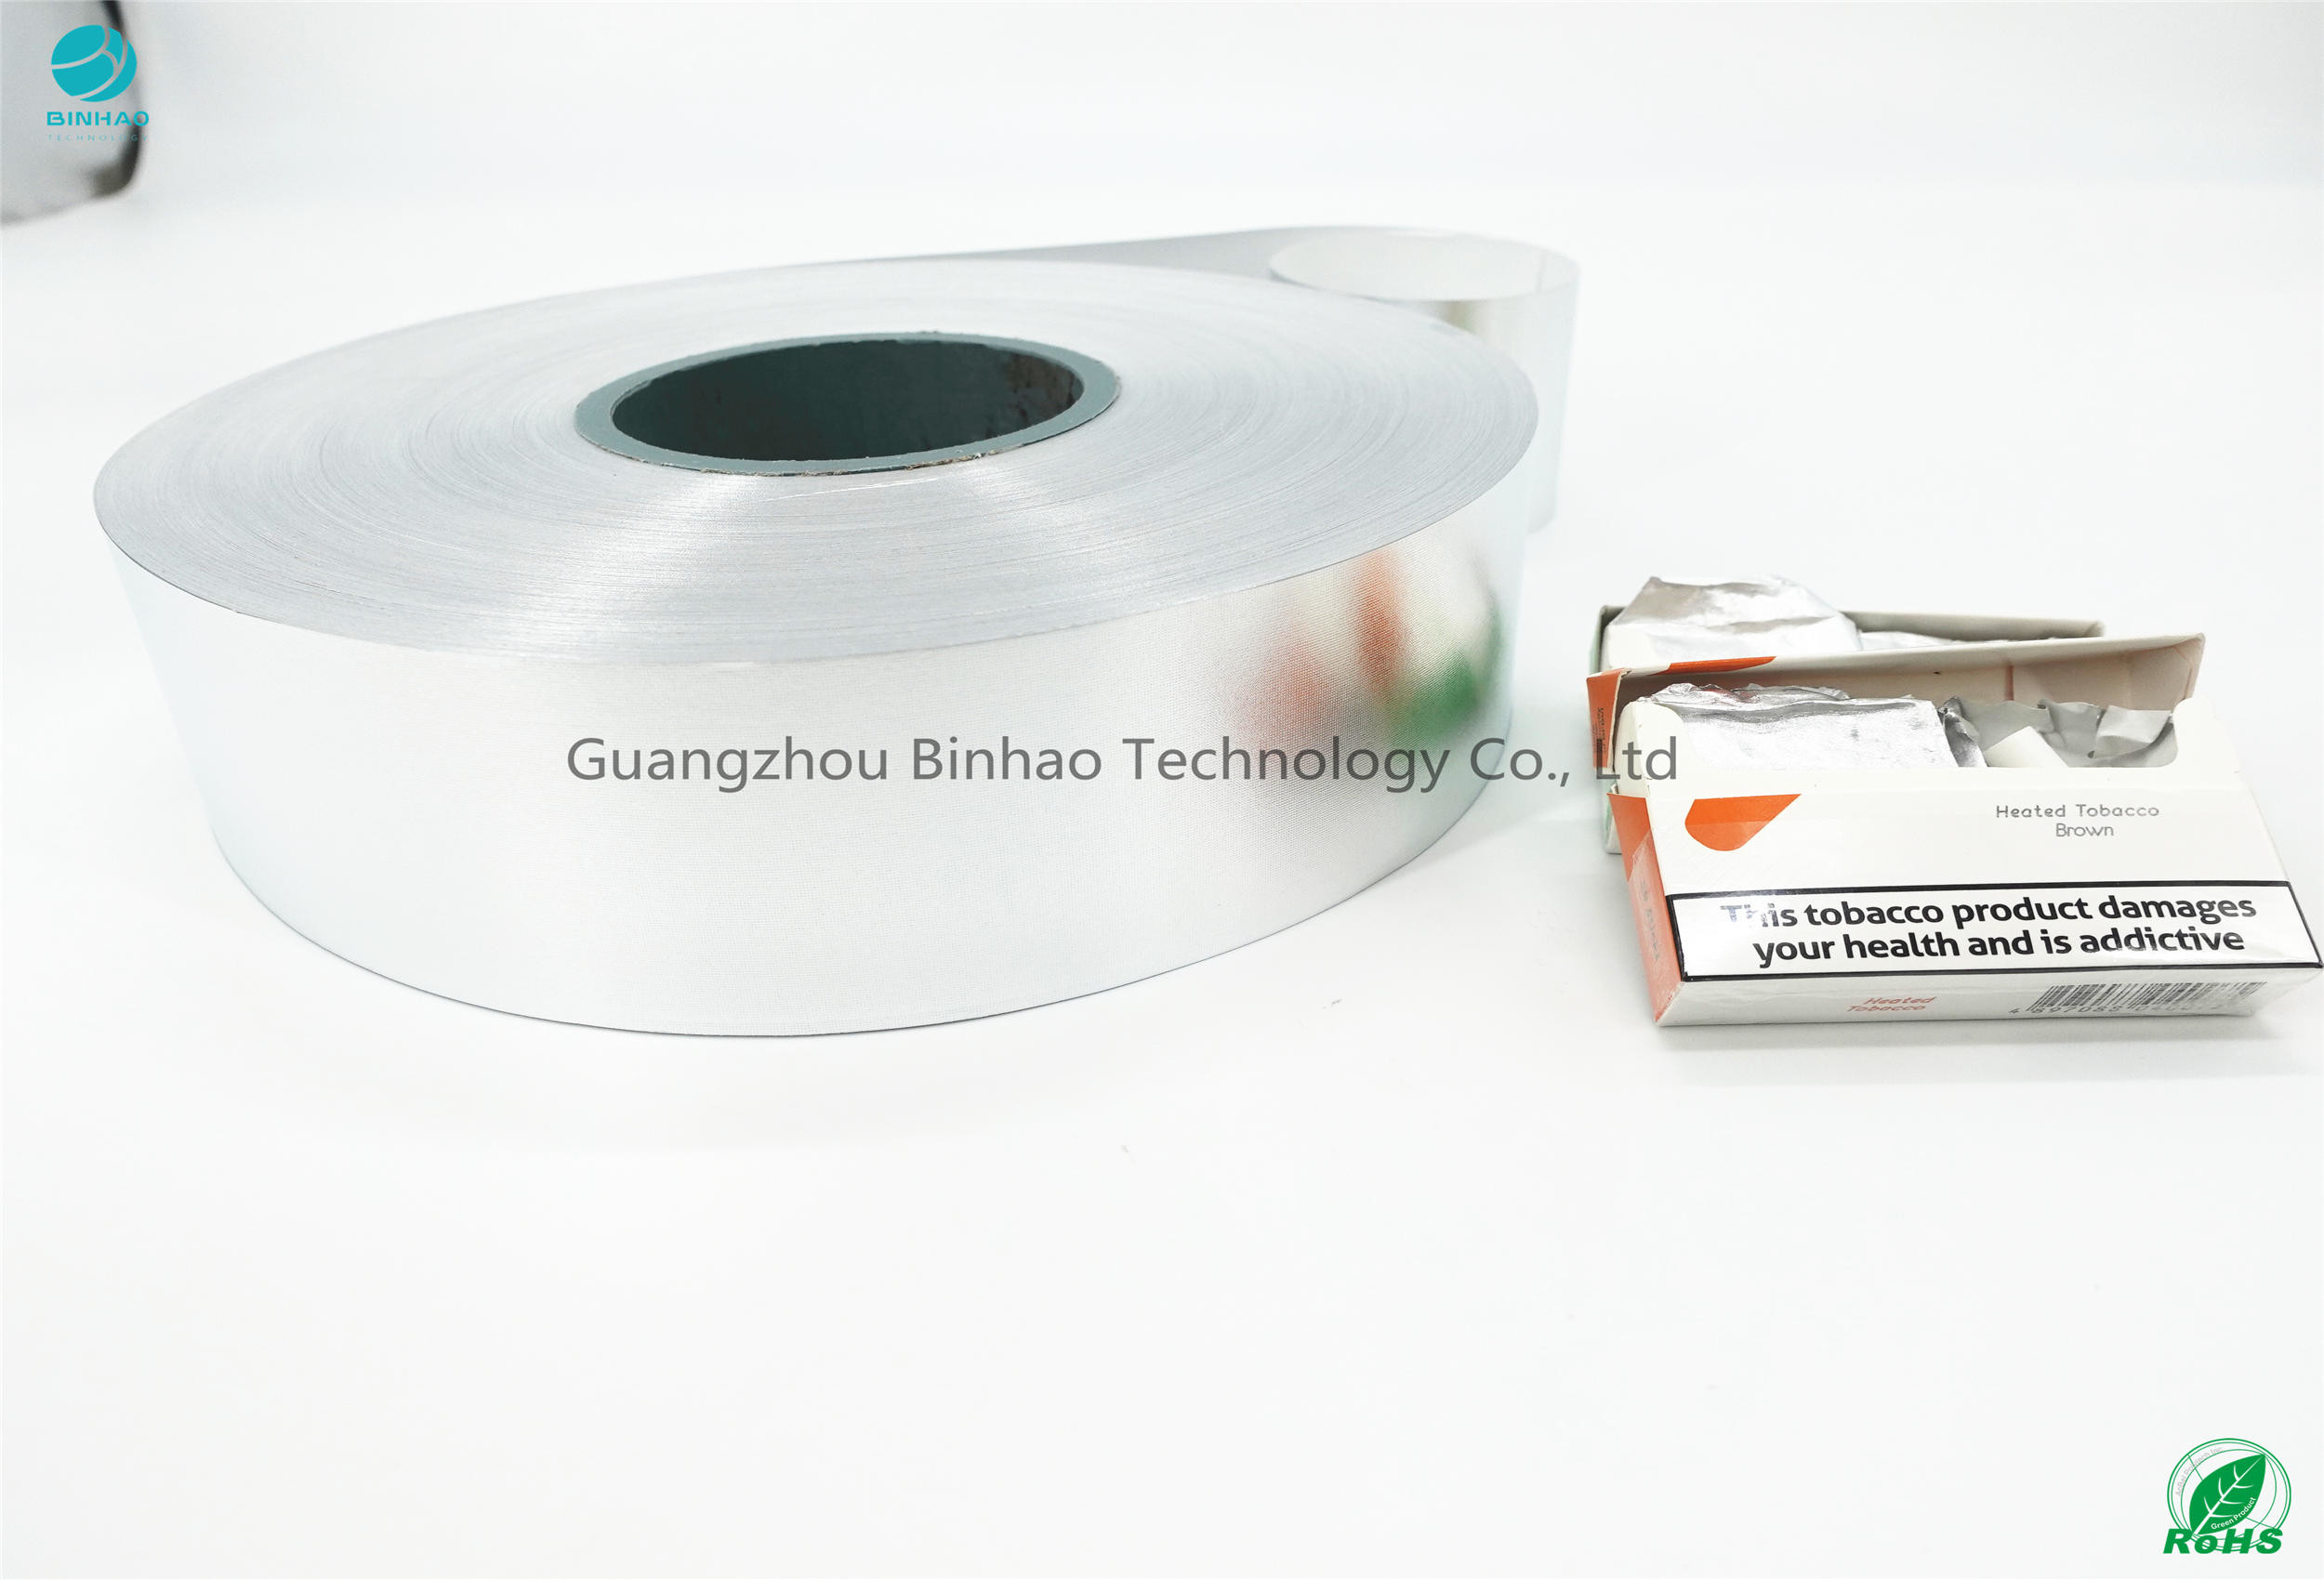 HNB E-Sigara Paketi Malzemeleri 55gsm Gramaj Kağıt Ağırlığı Alüminyum Folyo Kağıt